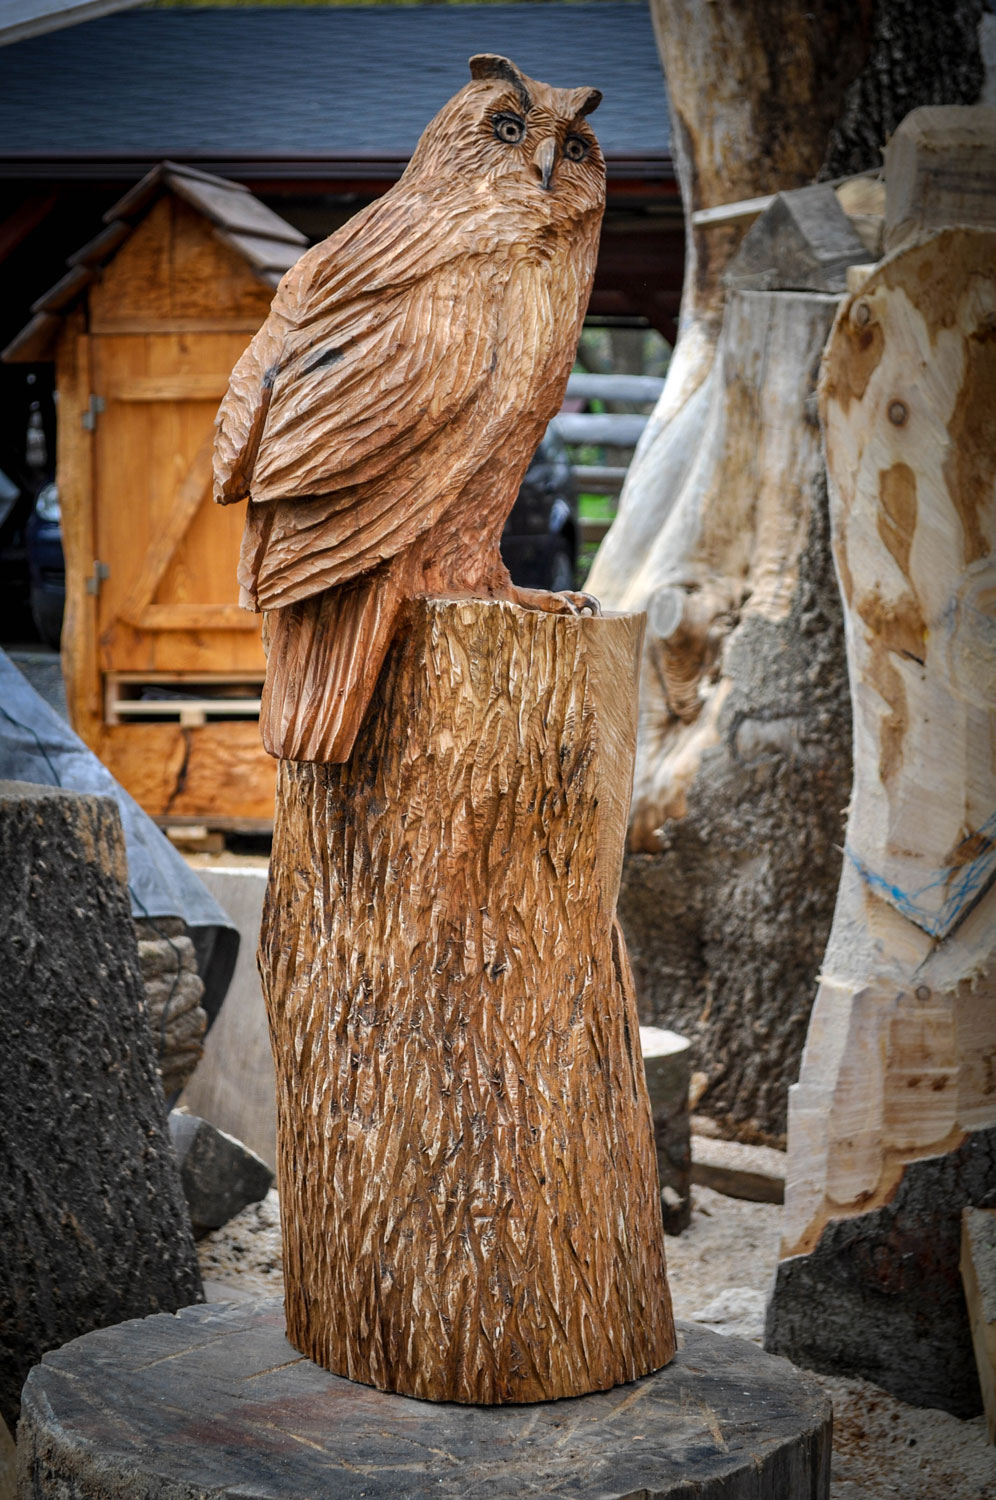 rezbar-drevorezba-vyrezavani-carving-wood-drevo-socha-bysta-vyr-120cm-radekzdrazil-20210425-09